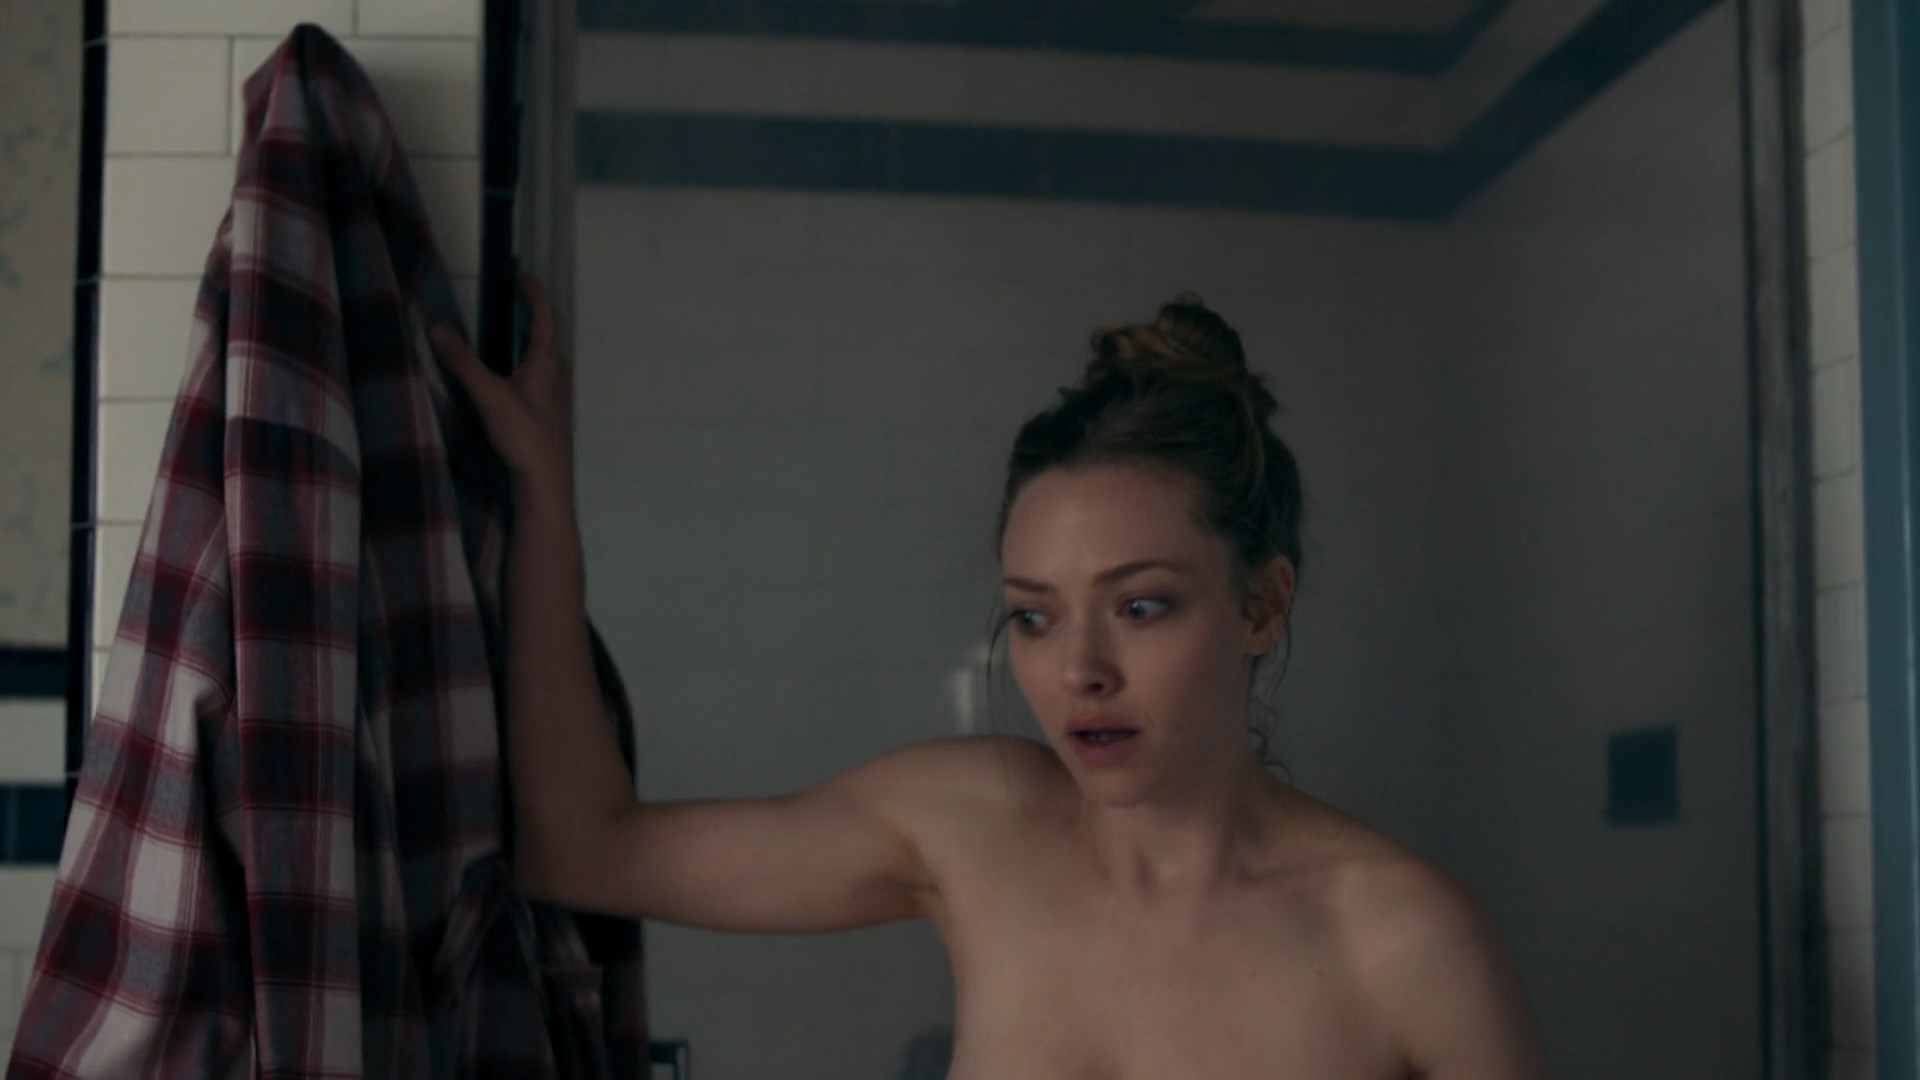 Natalia dyer nude leak